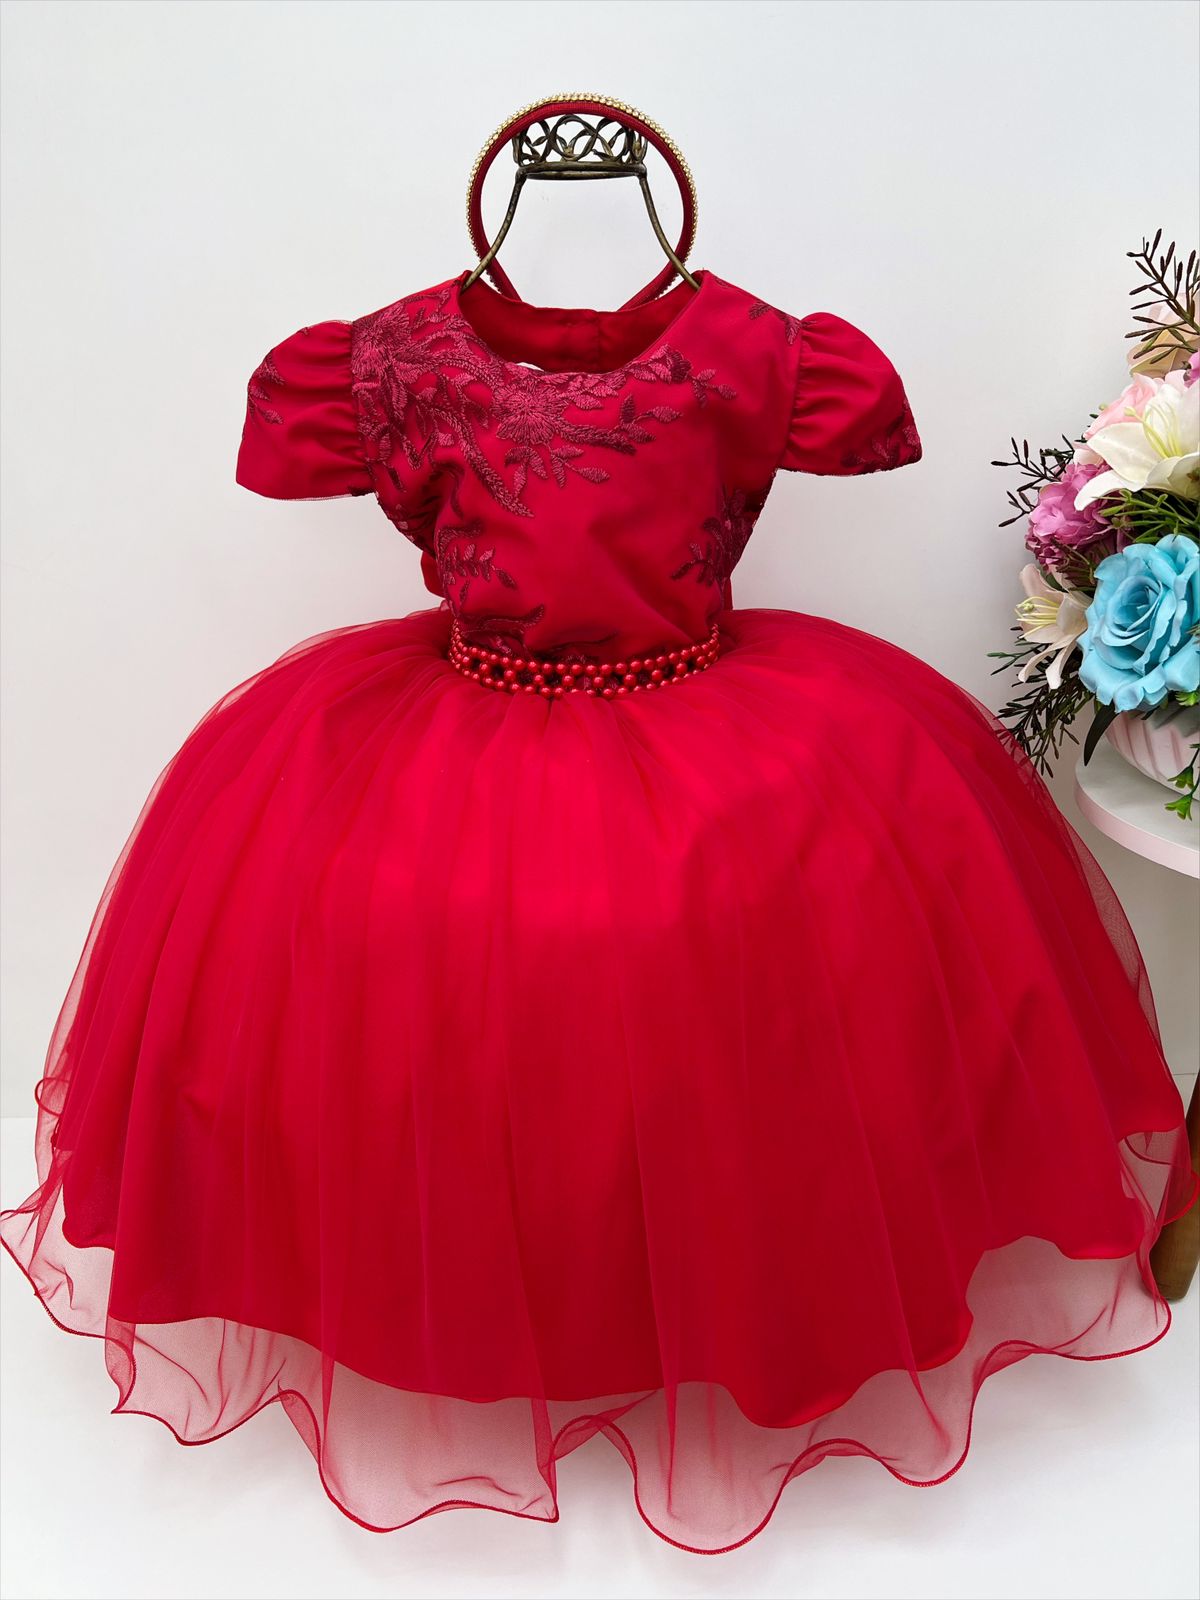 Vestido Infantil Vermelho C/ Renda Cinto Pérolas Tiara Luxo